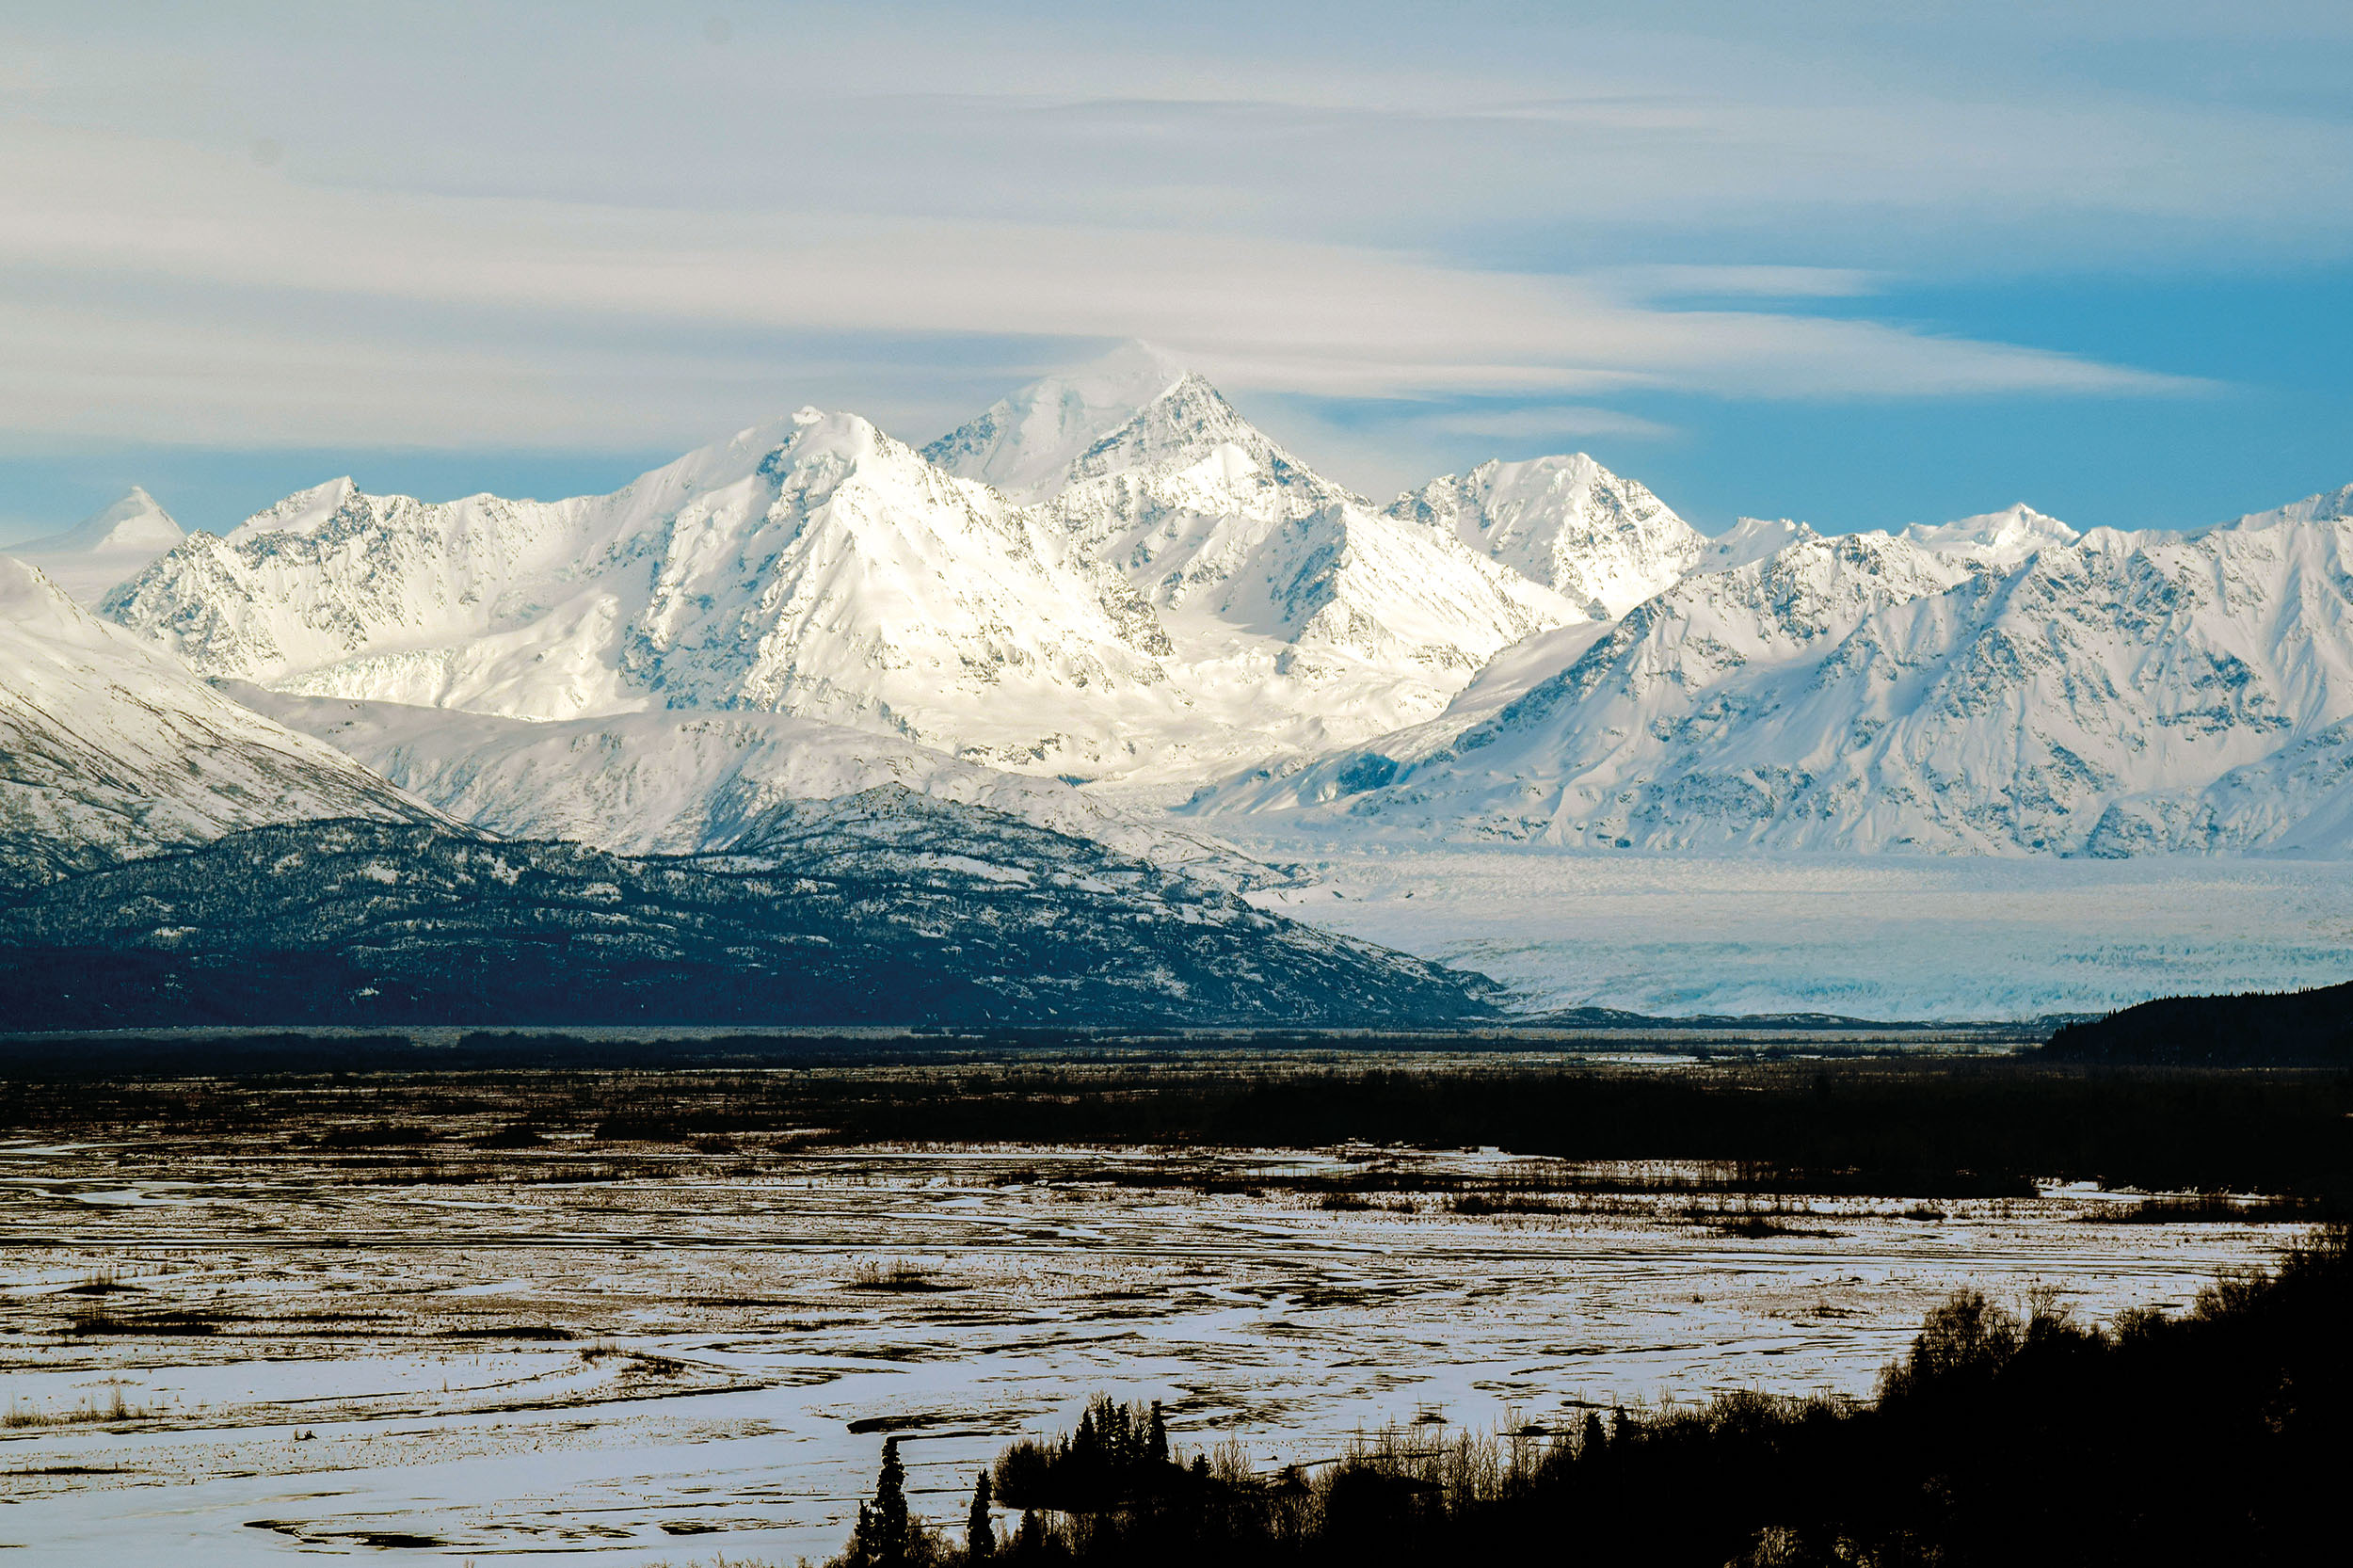 Pohled na aljašský ledovec Knik - oblast, kde zahynul Petr Kellner a čtyři další lidé při nehodě vrtulníku 27. března 2021.